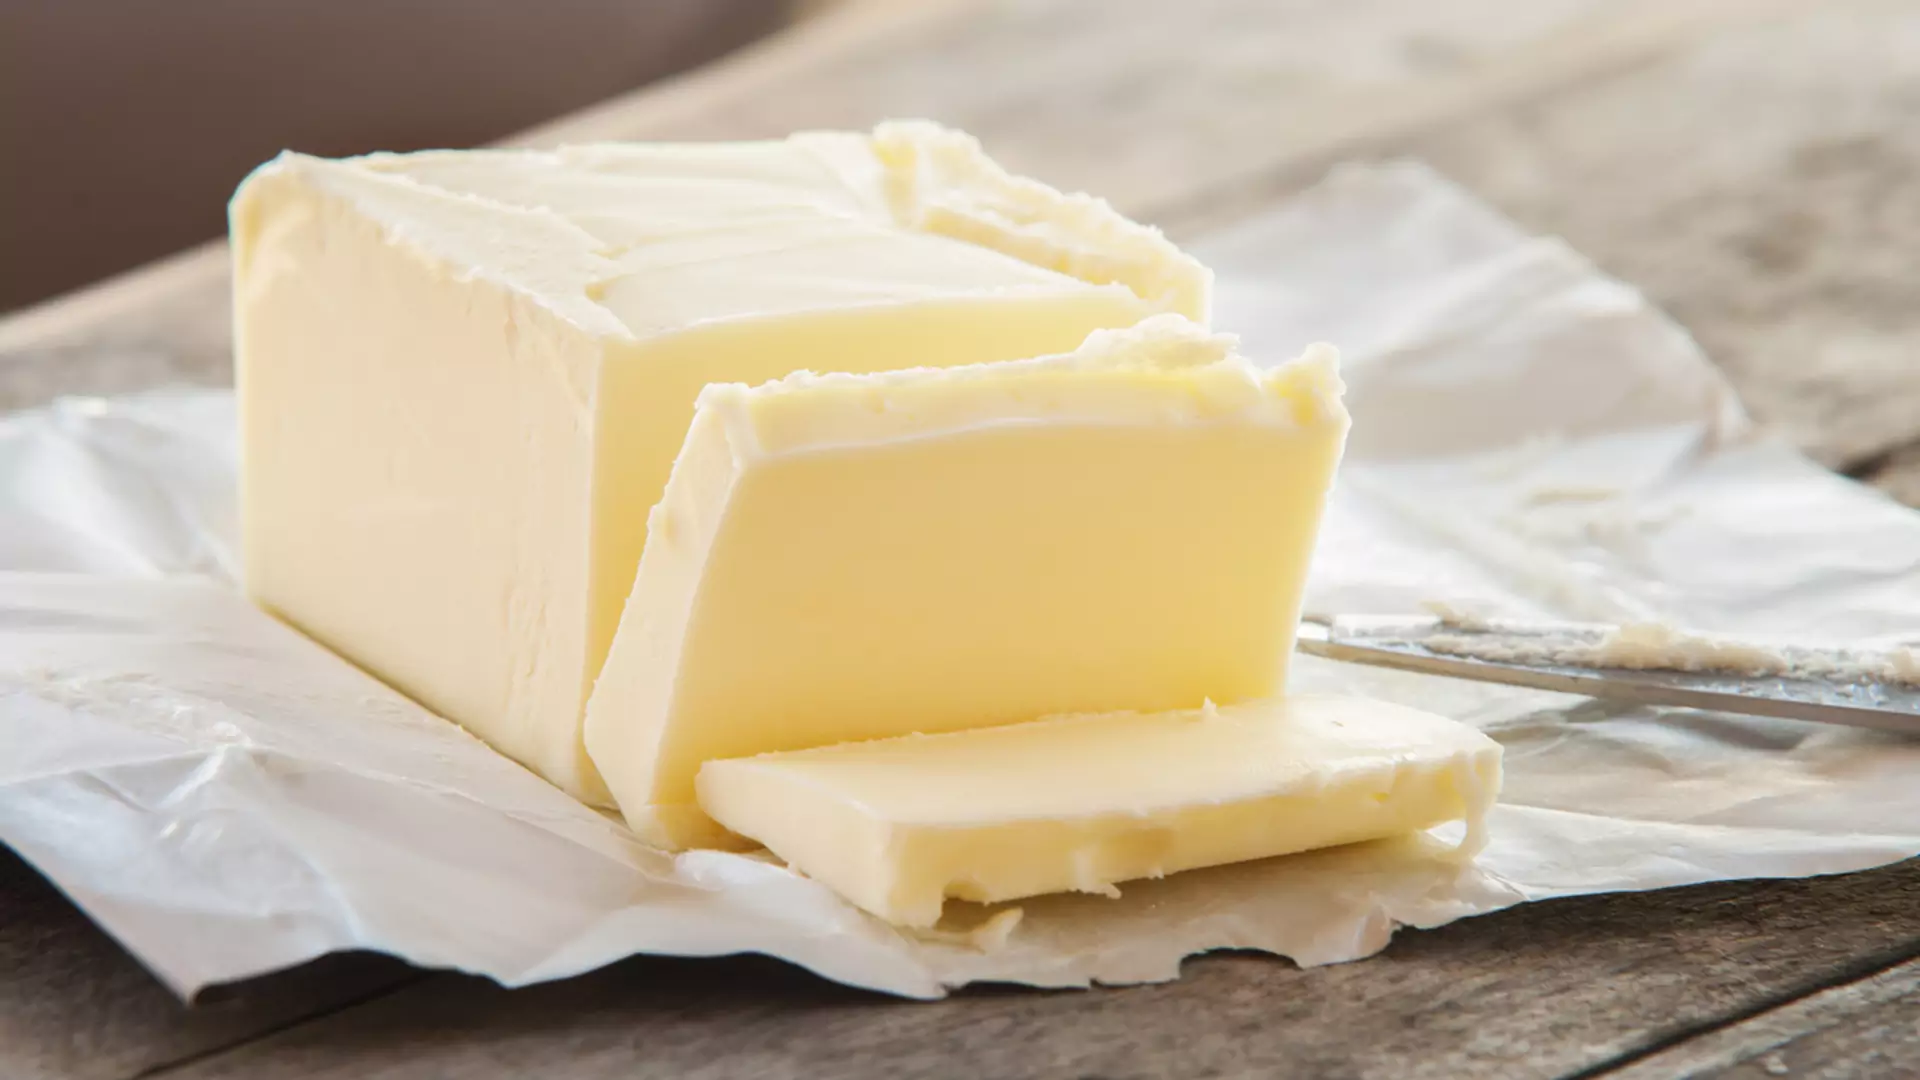 Polskie sklepy walczą ze złodziejami masła? Dziennikarz odkrył specjalne zabezpieczenie